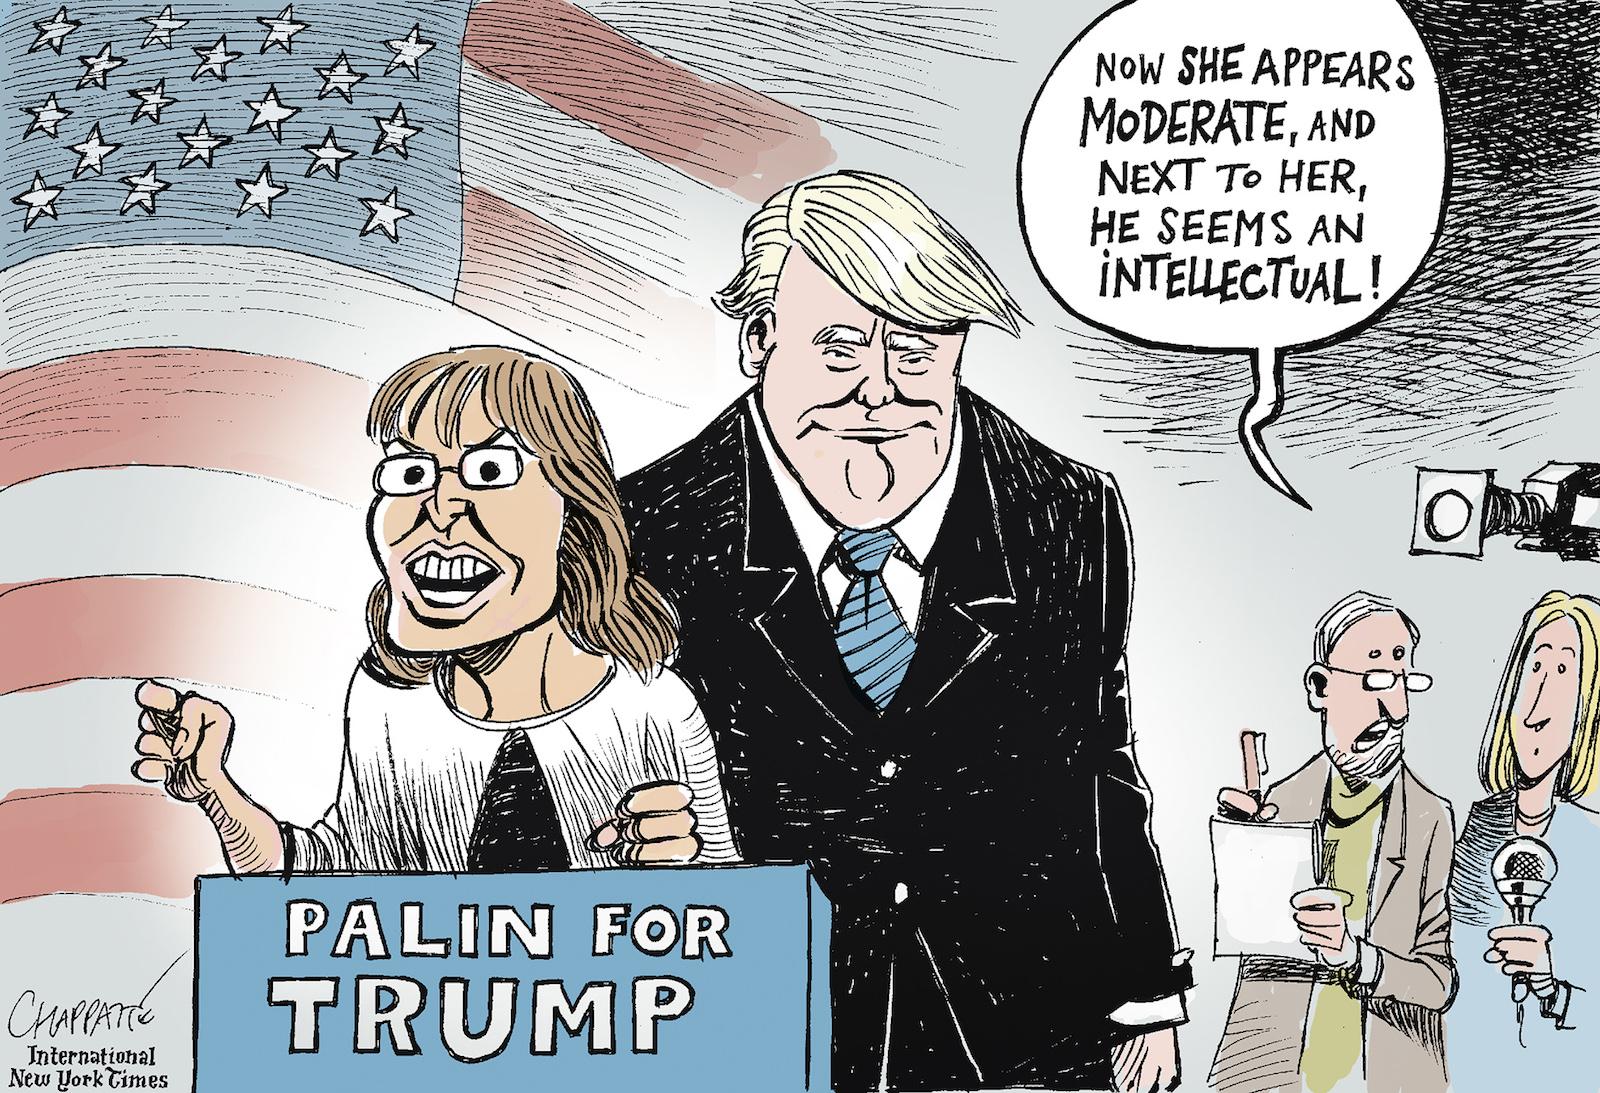 Sarah Palin endorses Trump